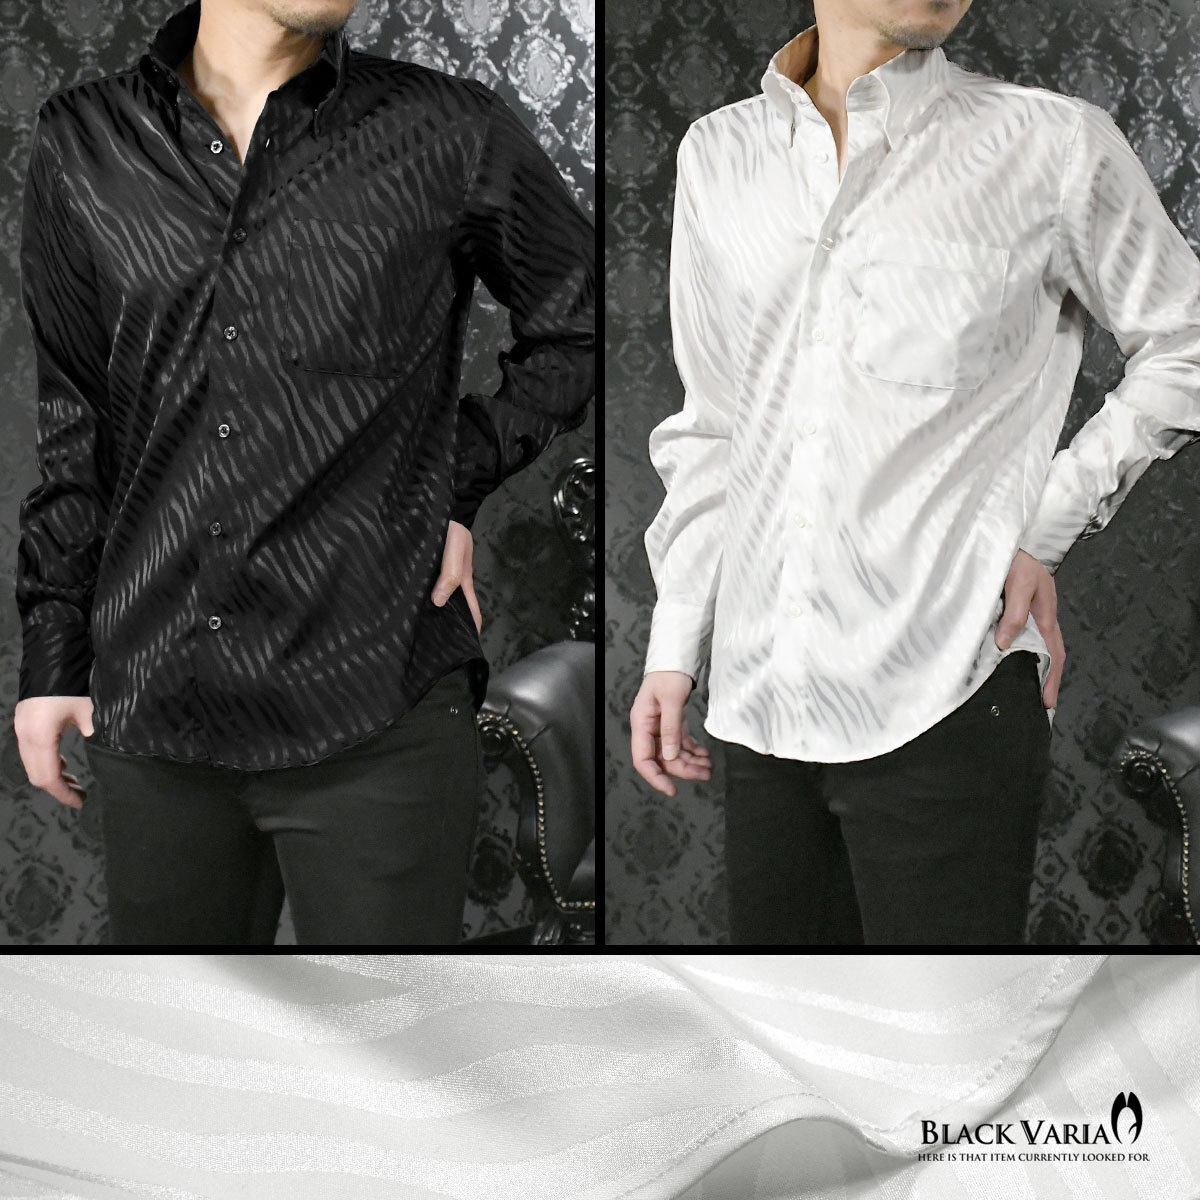 a181722-wh BLACK VARIA ドゥエボットーニ ゼブラ柄 ジャガード レギュラーカラードレスシャツ 日本製 メンズ(ホワイト白) XL パーティー_レギュラーカラー